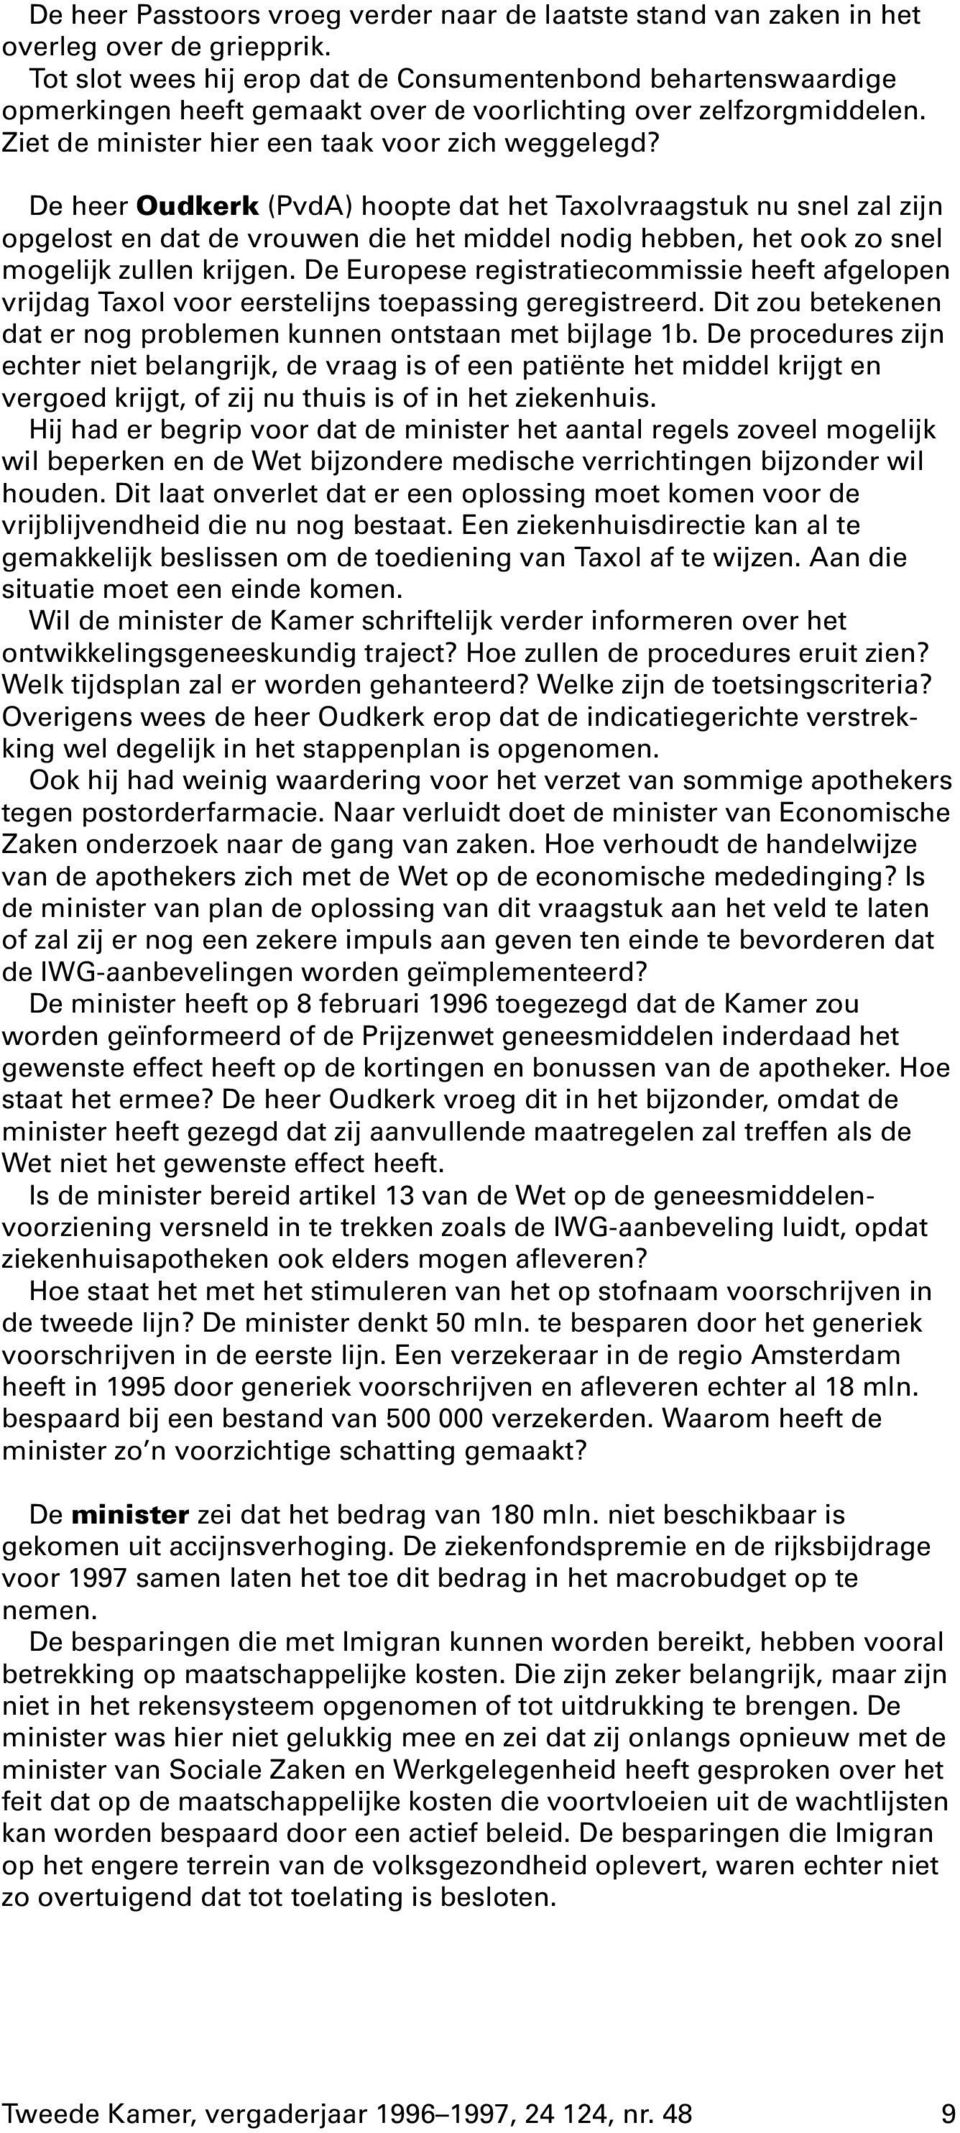 De heer Oudkerk (PvdA) hoopte dat het Taxolvraagstuk nu snel zal zijn opgelost en dat de vrouwen die het middel nodig hebben, het ook zo snel mogelijk zullen krijgen.